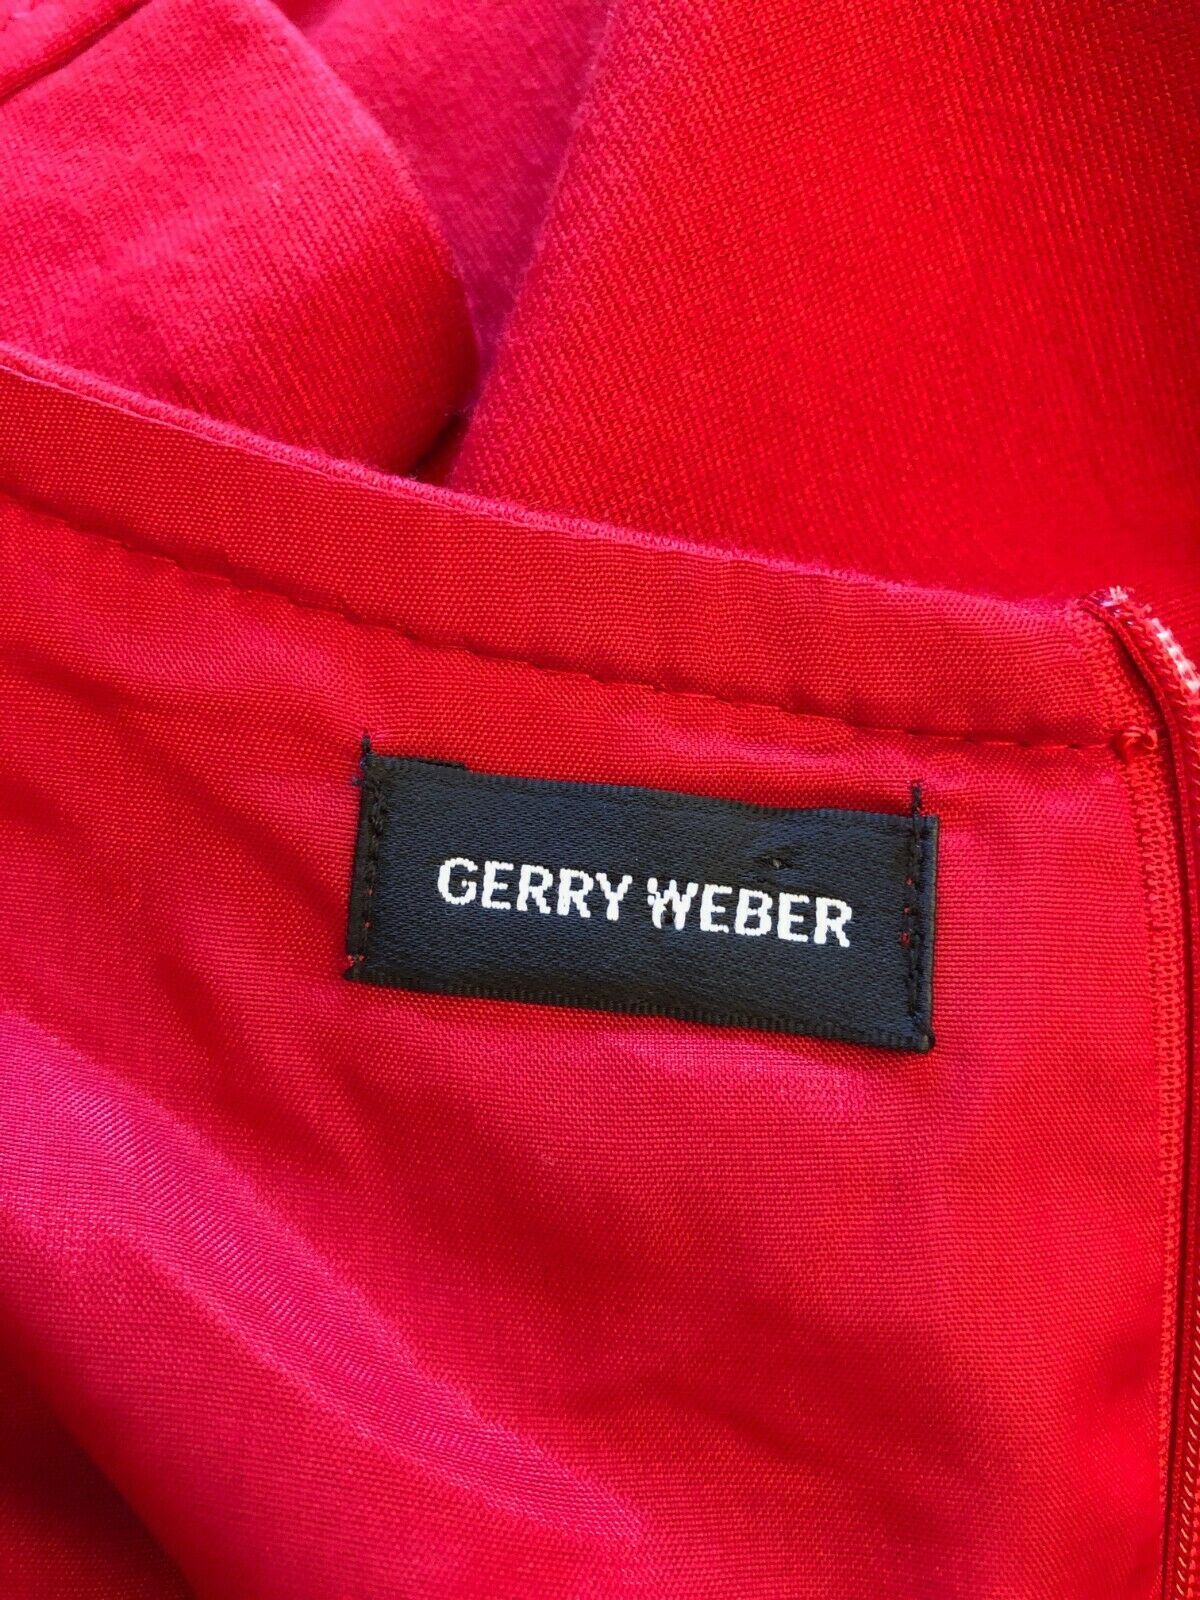 Gerry Weber Women's Red Short Sleeved Shift Dress UK 16 US 12 EU 44 Timeless Fashions